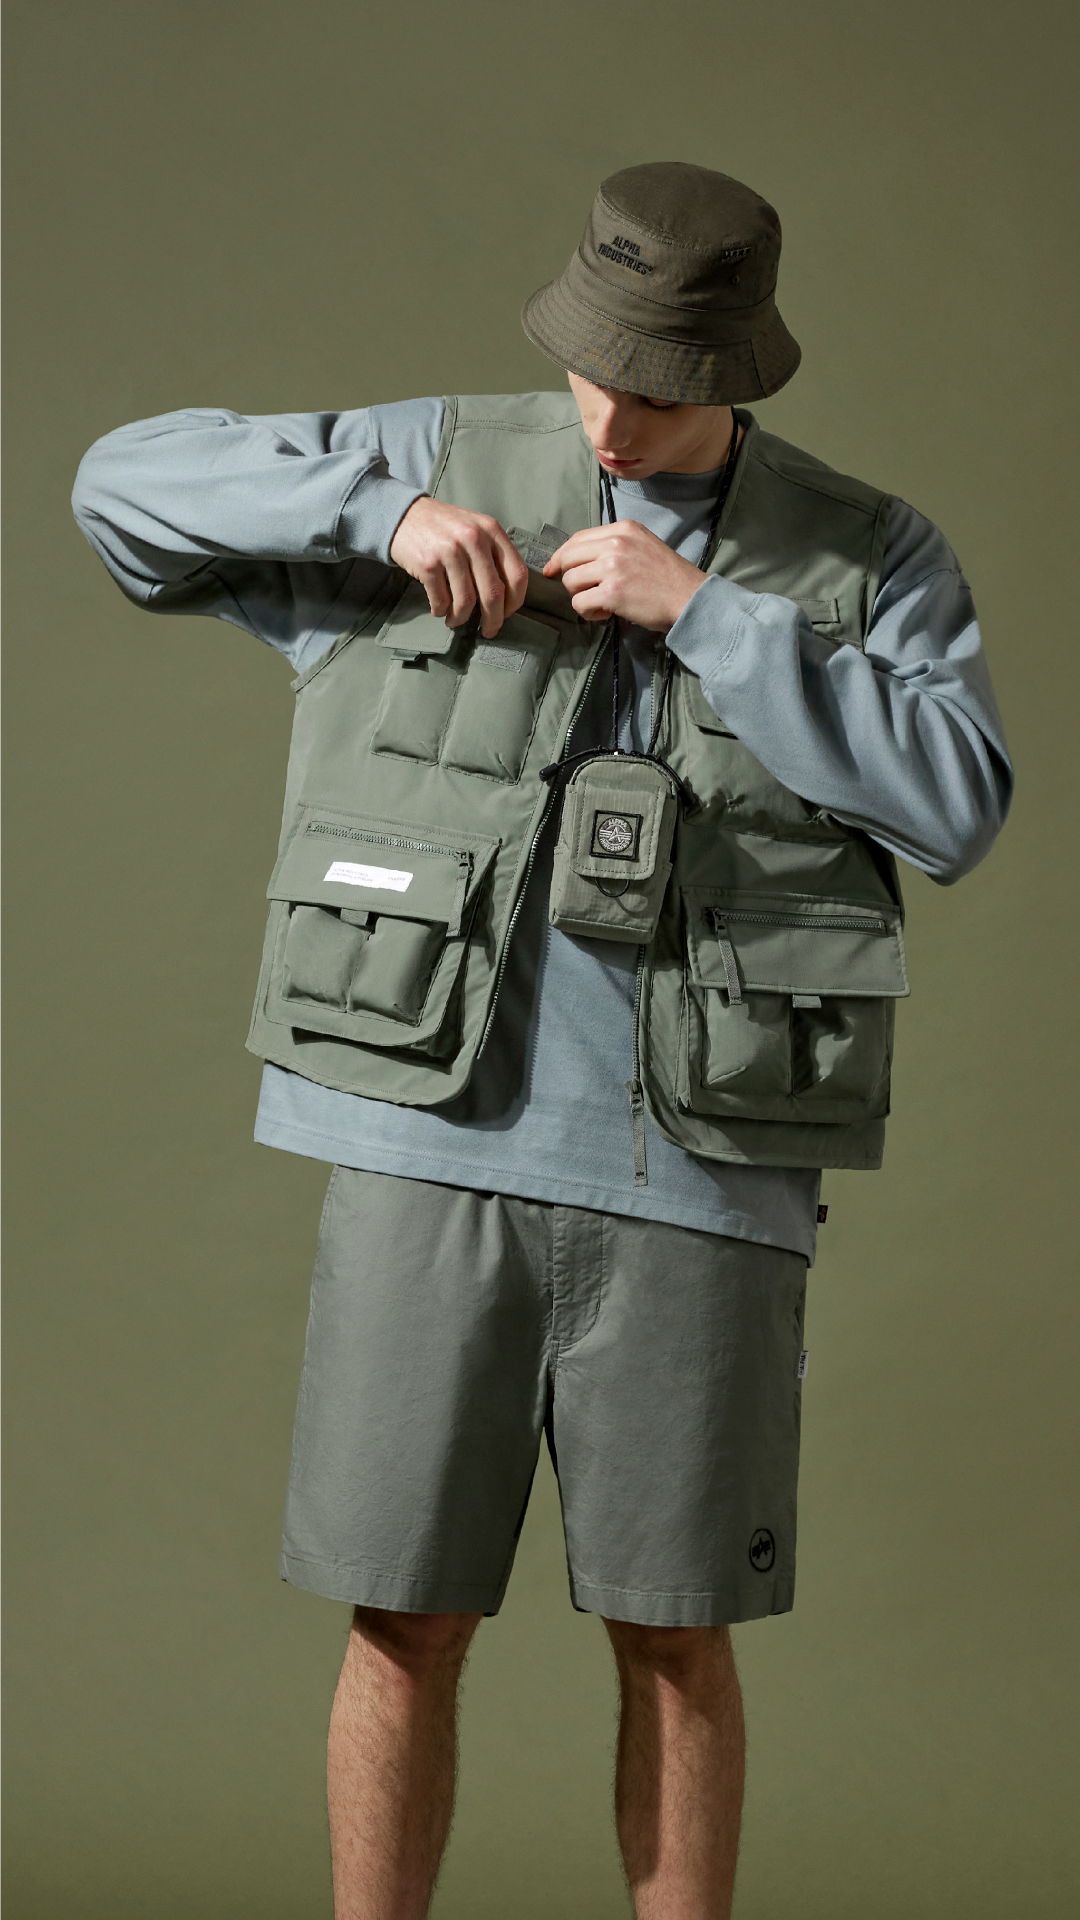 美國軍用服裝品牌 ALPHA INDUSTRIES 推出以露營及釣魚服為設計靈感春夏系列